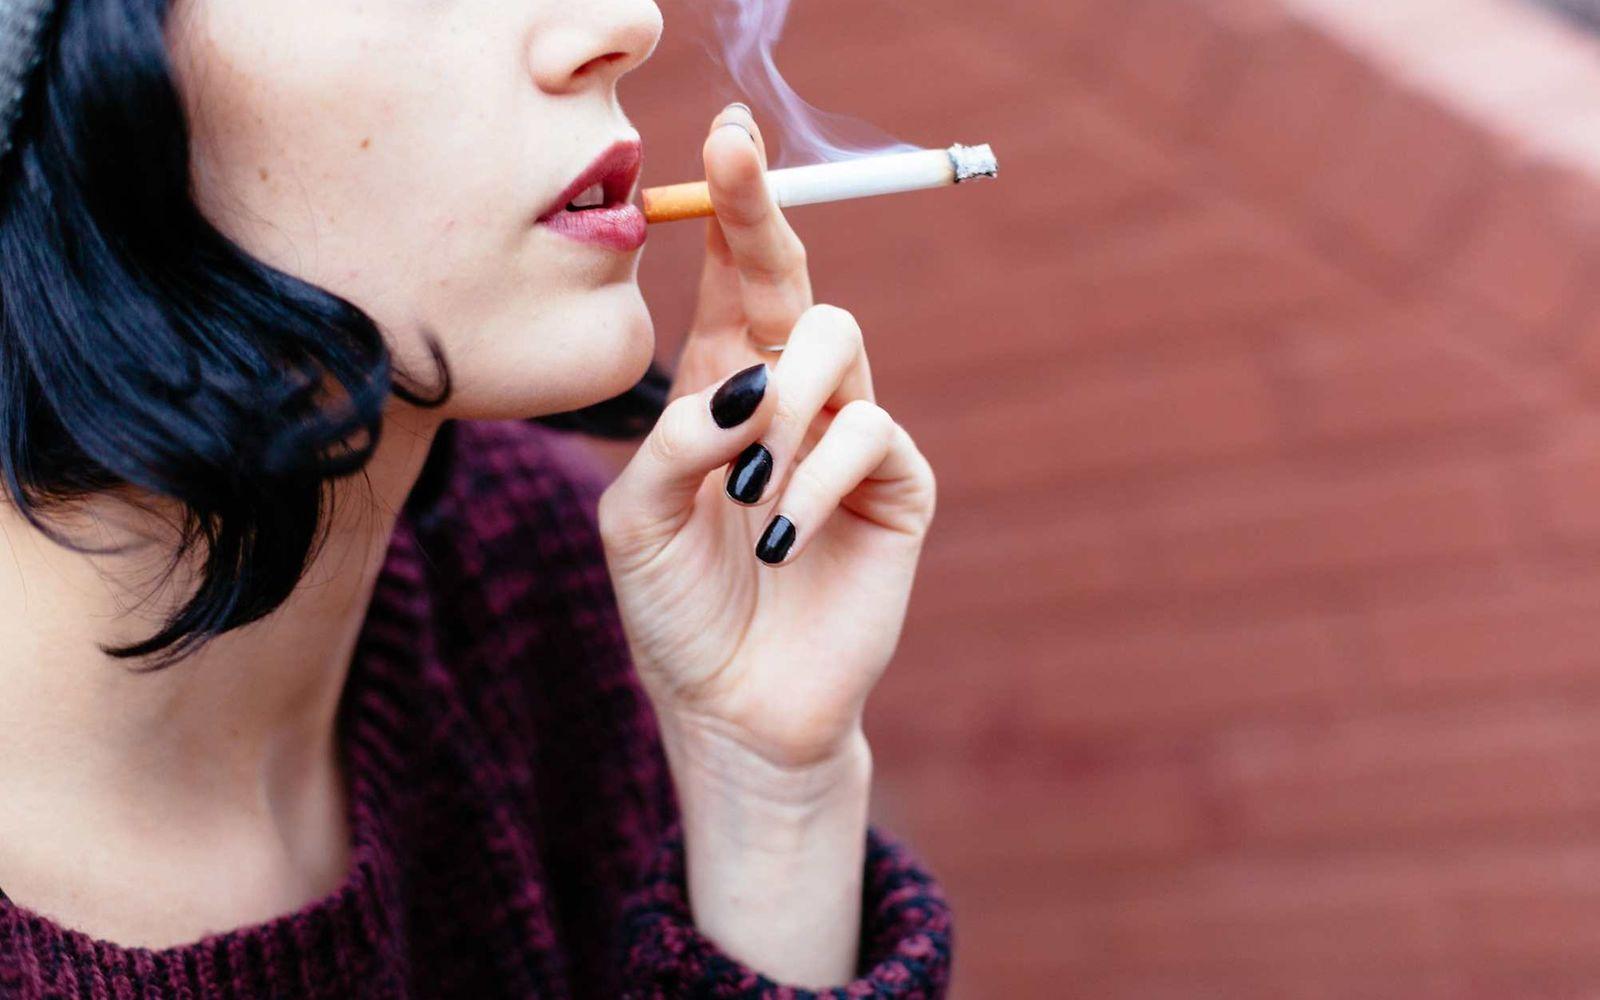 Frauen bekommen leichter Raucherlunge